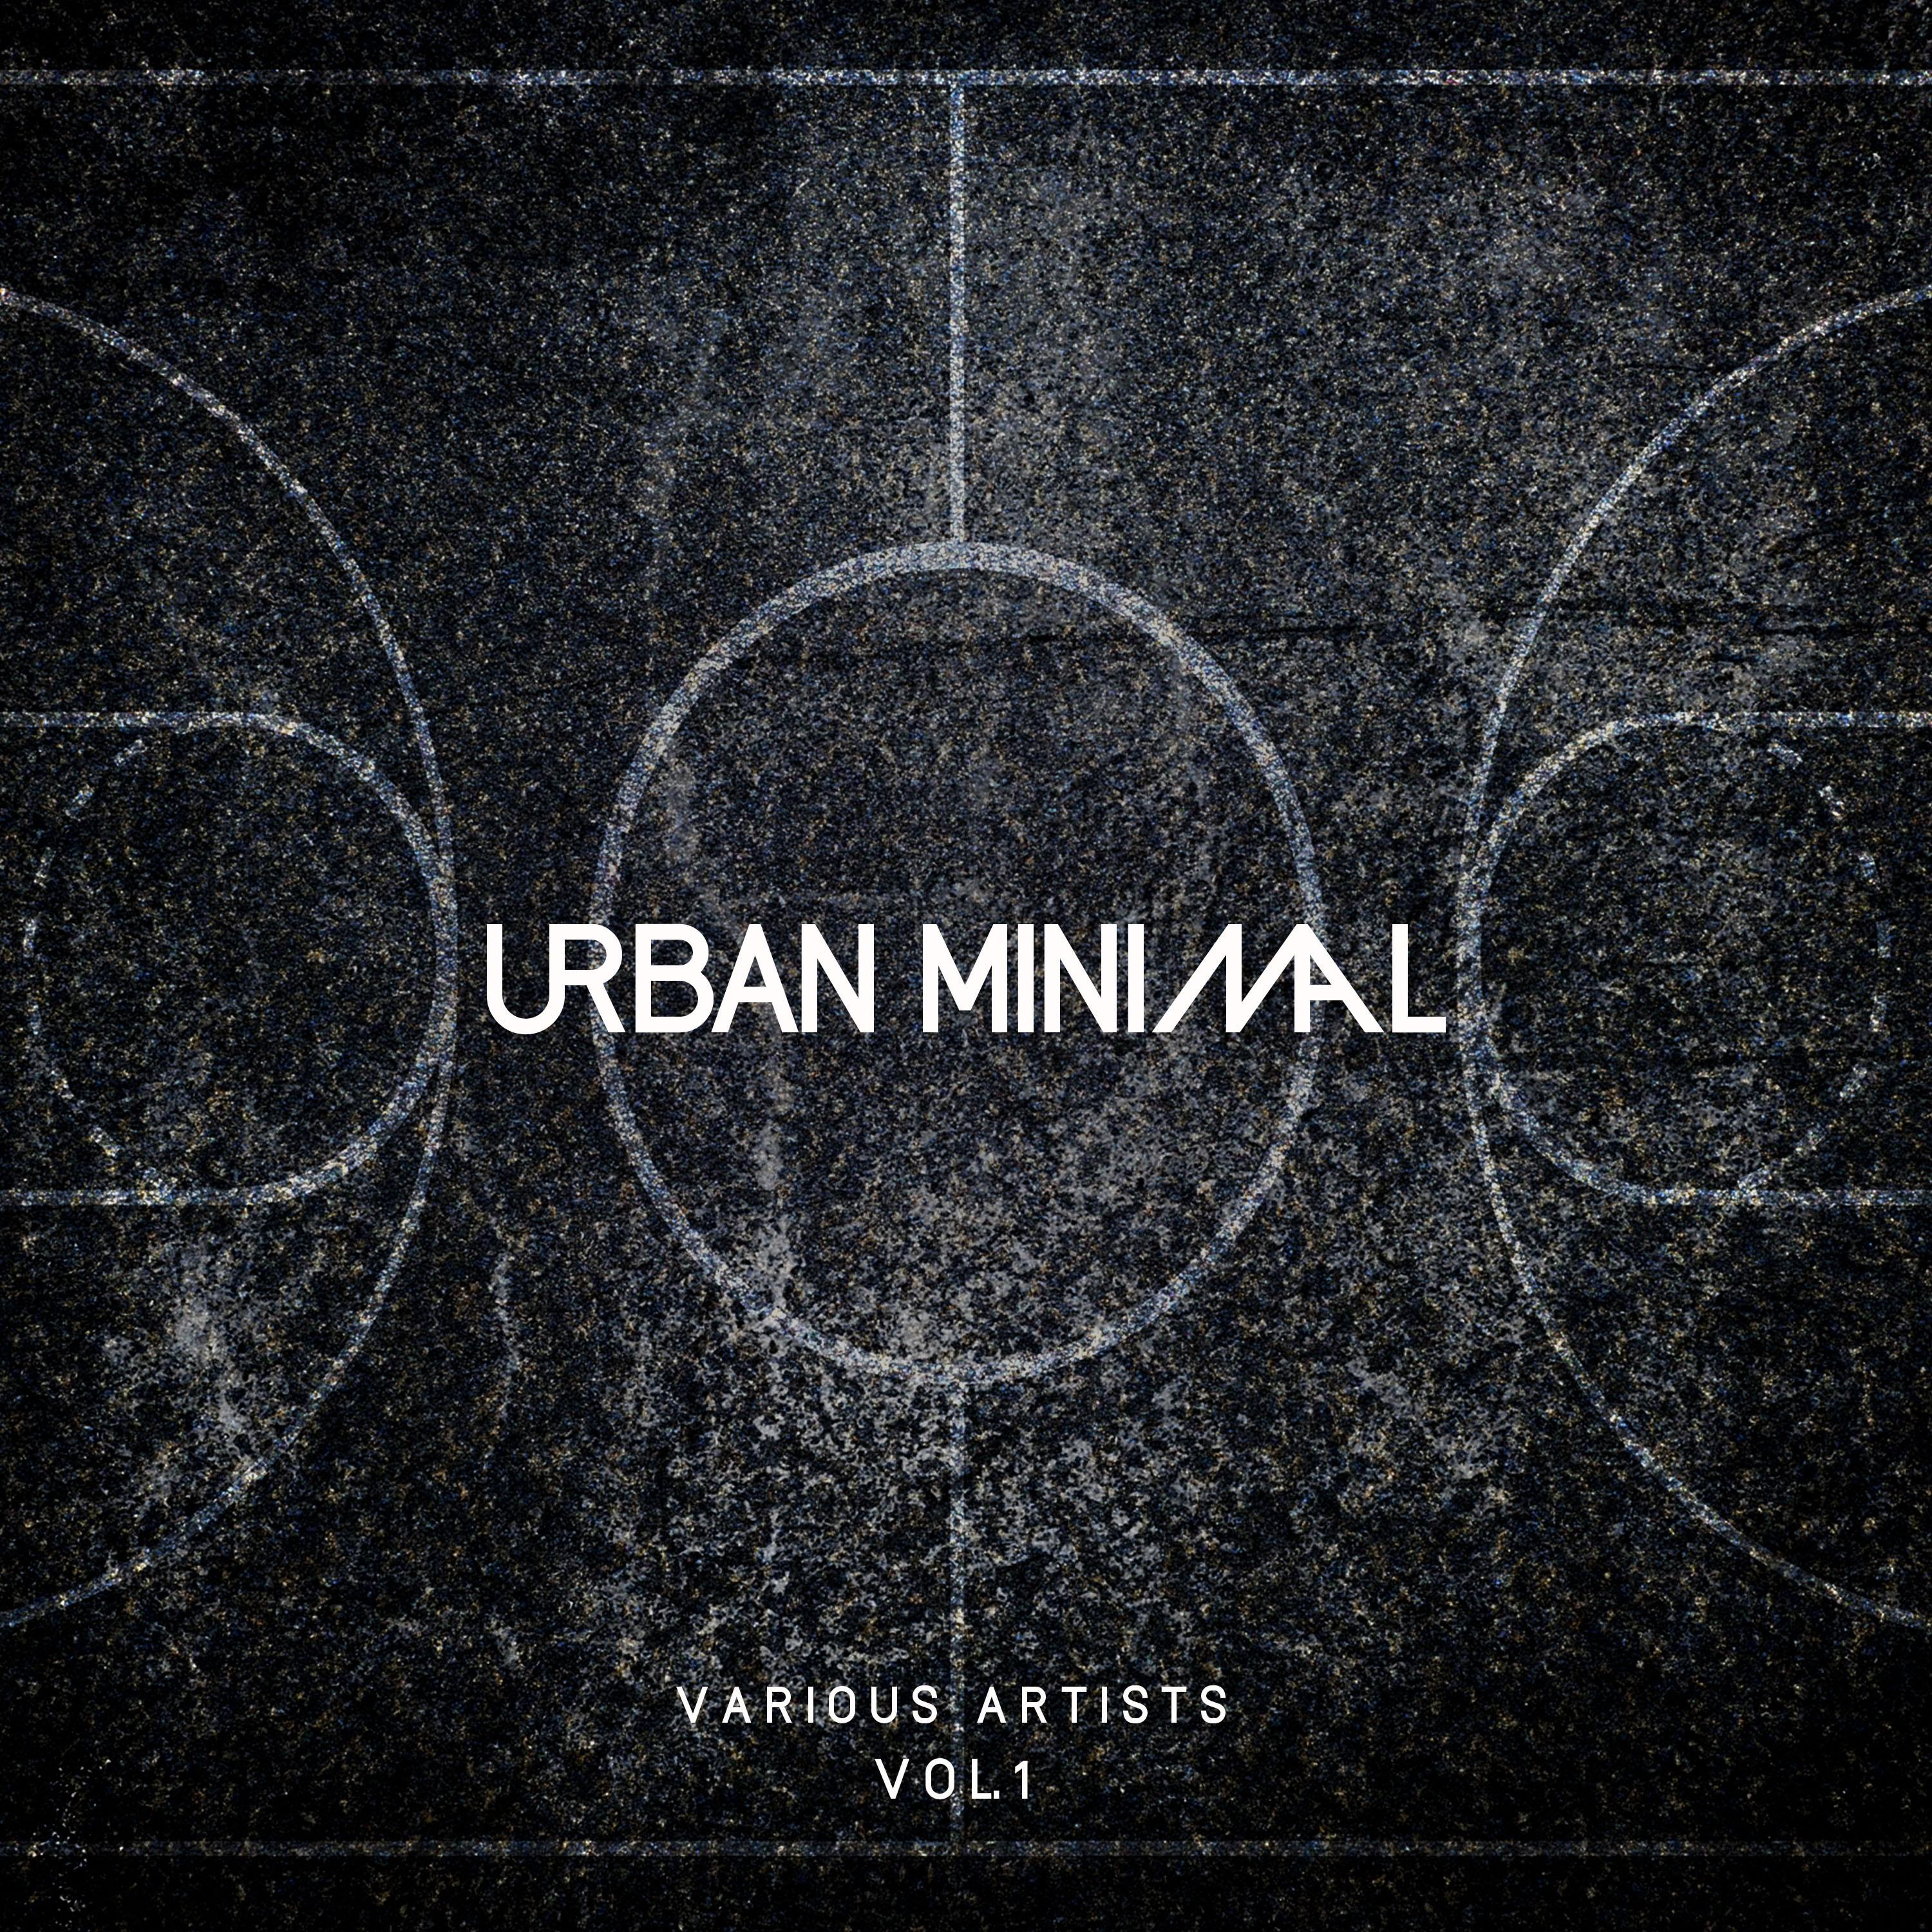 Urban Minimal, Vol. 1